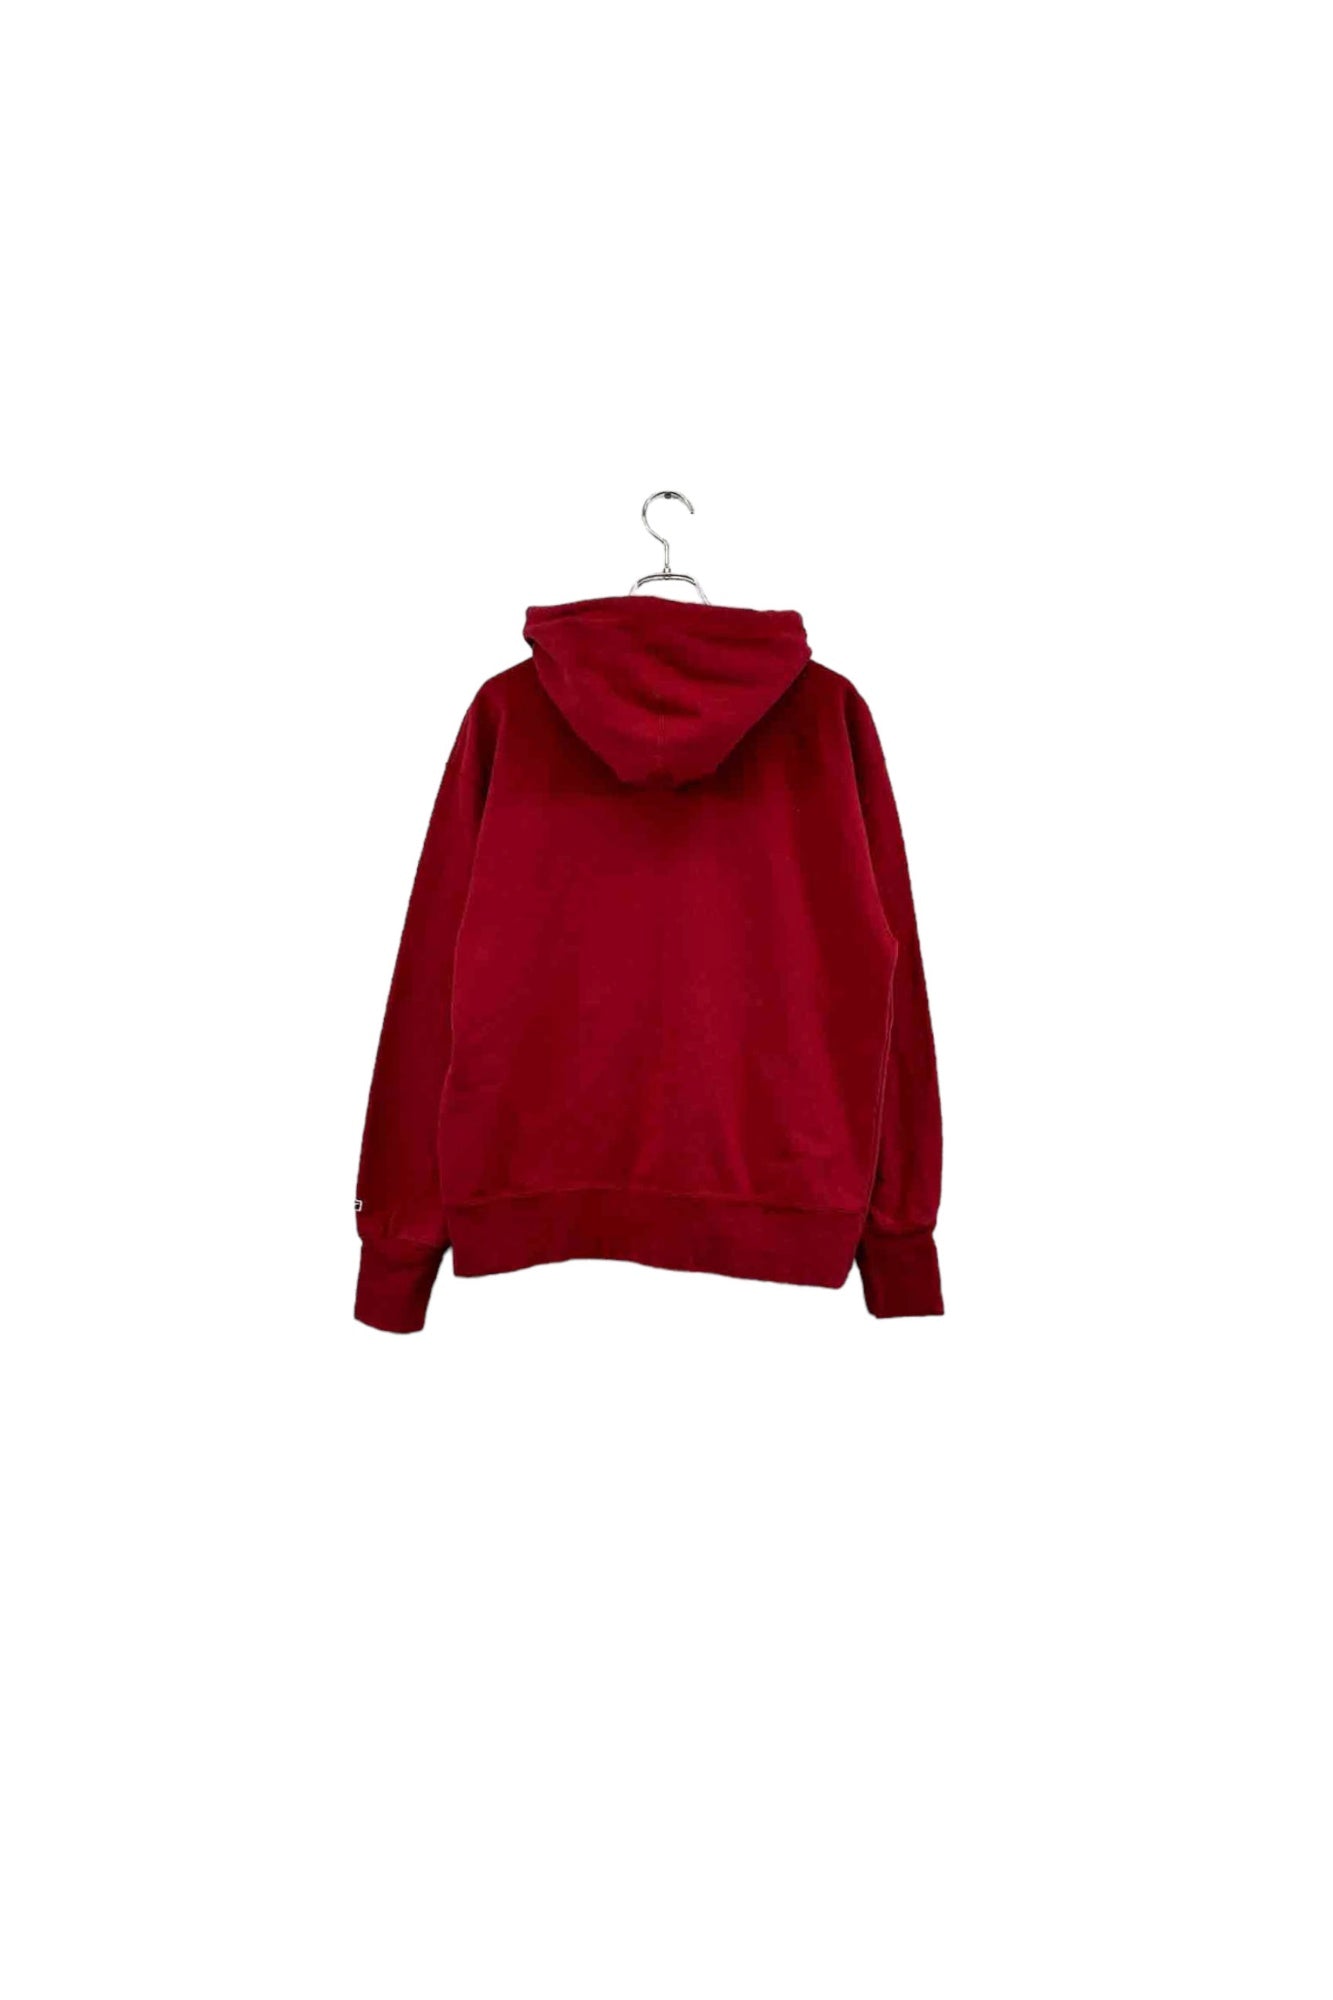 Reebok red hoodie